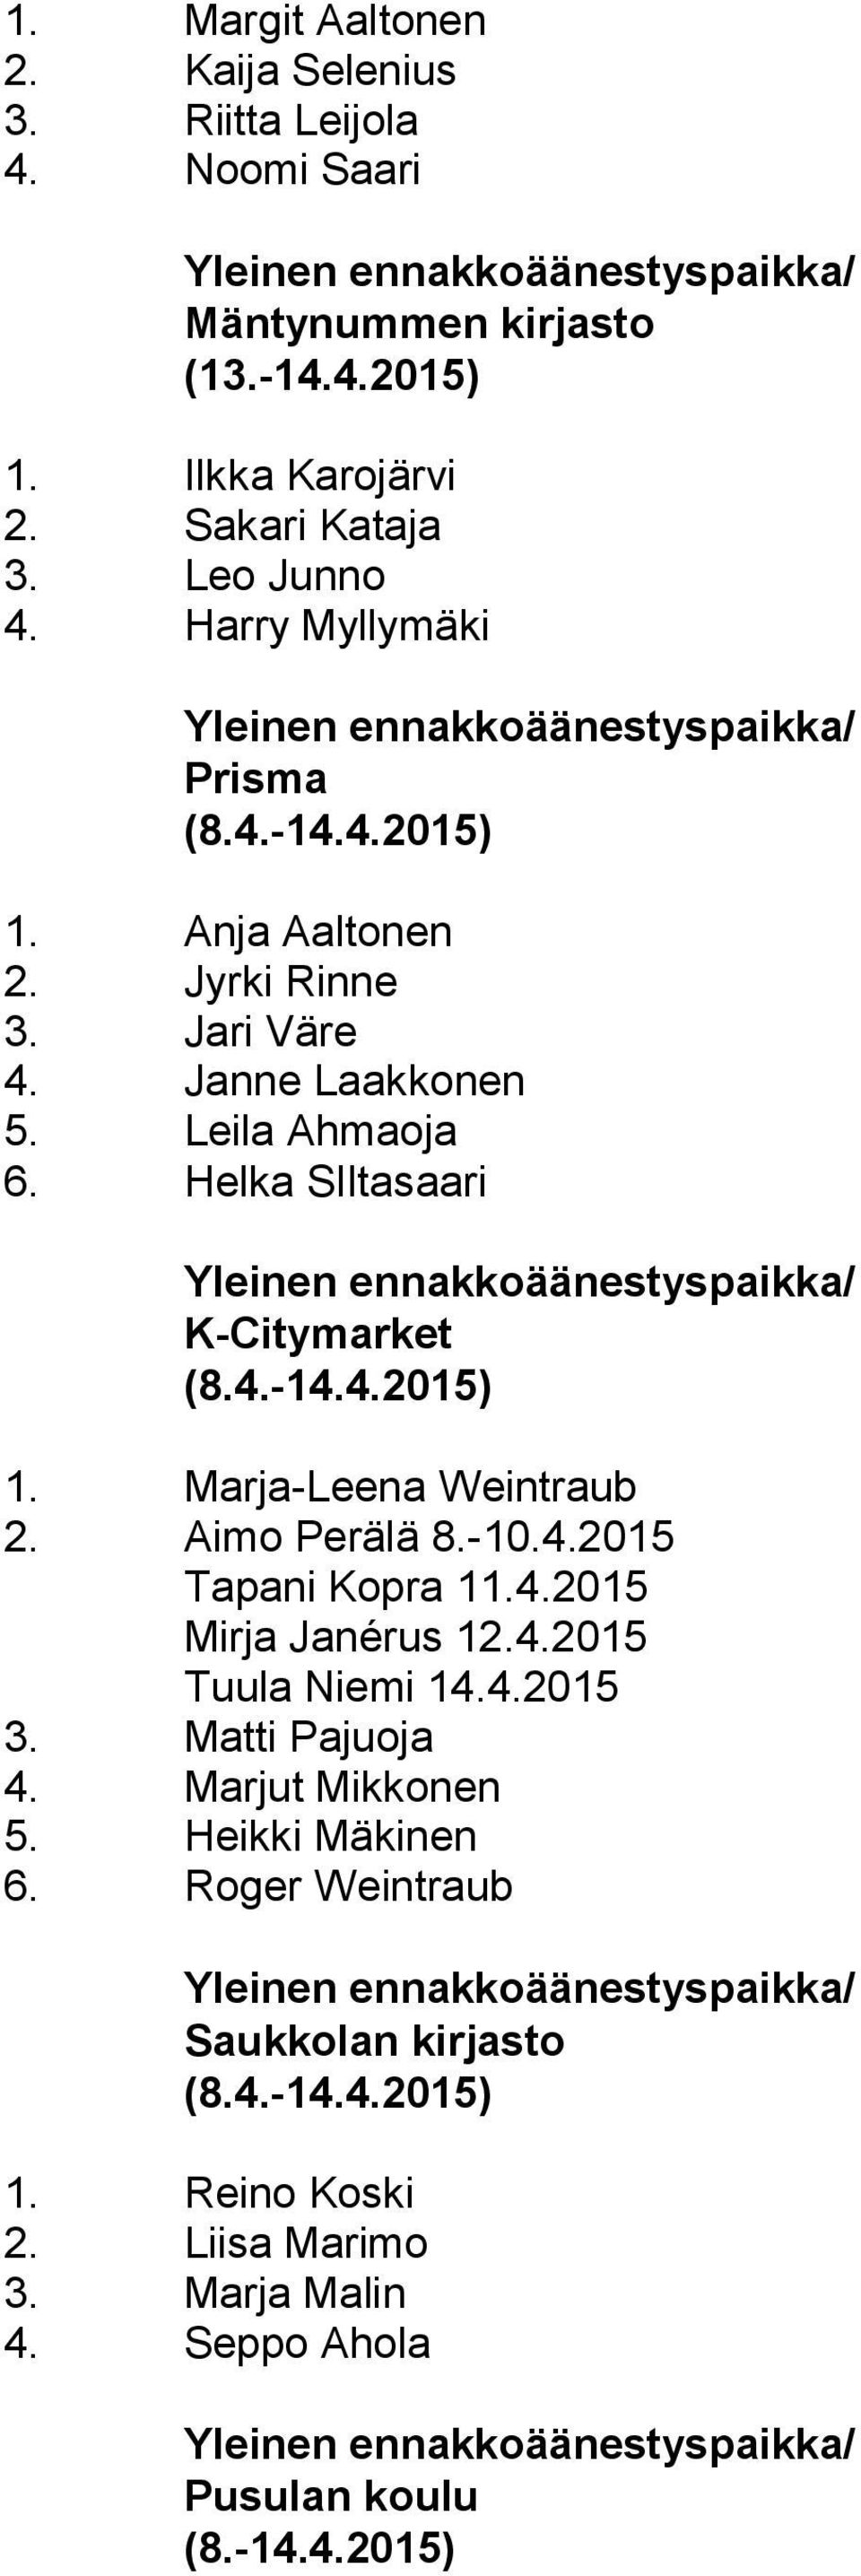 Aimo Perälä 8.-10.4.2015 Tapani Kopra 11.4.2015 Mirja Janérus 12.4.2015 Tuula Niemi 14.4.2015 3. Matti Pajuoja 4. Marjut Mikkonen 5. Heikki Mäkinen 6.